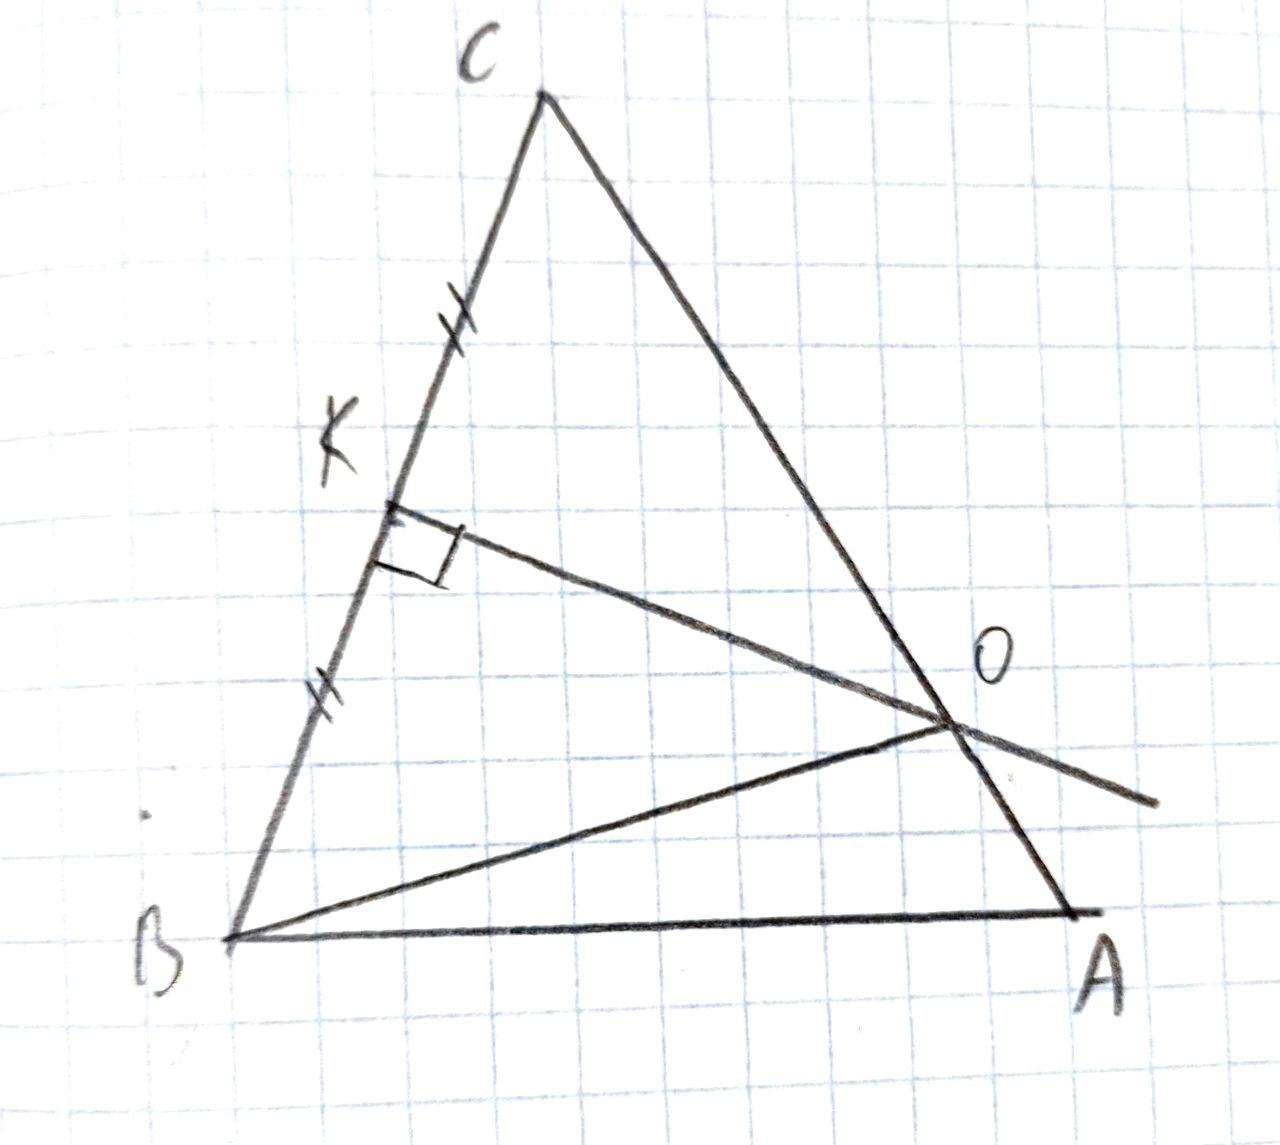 Серединный перпендикуляр стороны АС. Серединный перпендикуляр в прямоугольном треугольнике. Серединные перпендикуляры к сторонам треугольника. Найдите сторону вс треугольника АВС изображенного на рисунке. Серединные перпендикуляры к сторонам треугольника выберите ответ